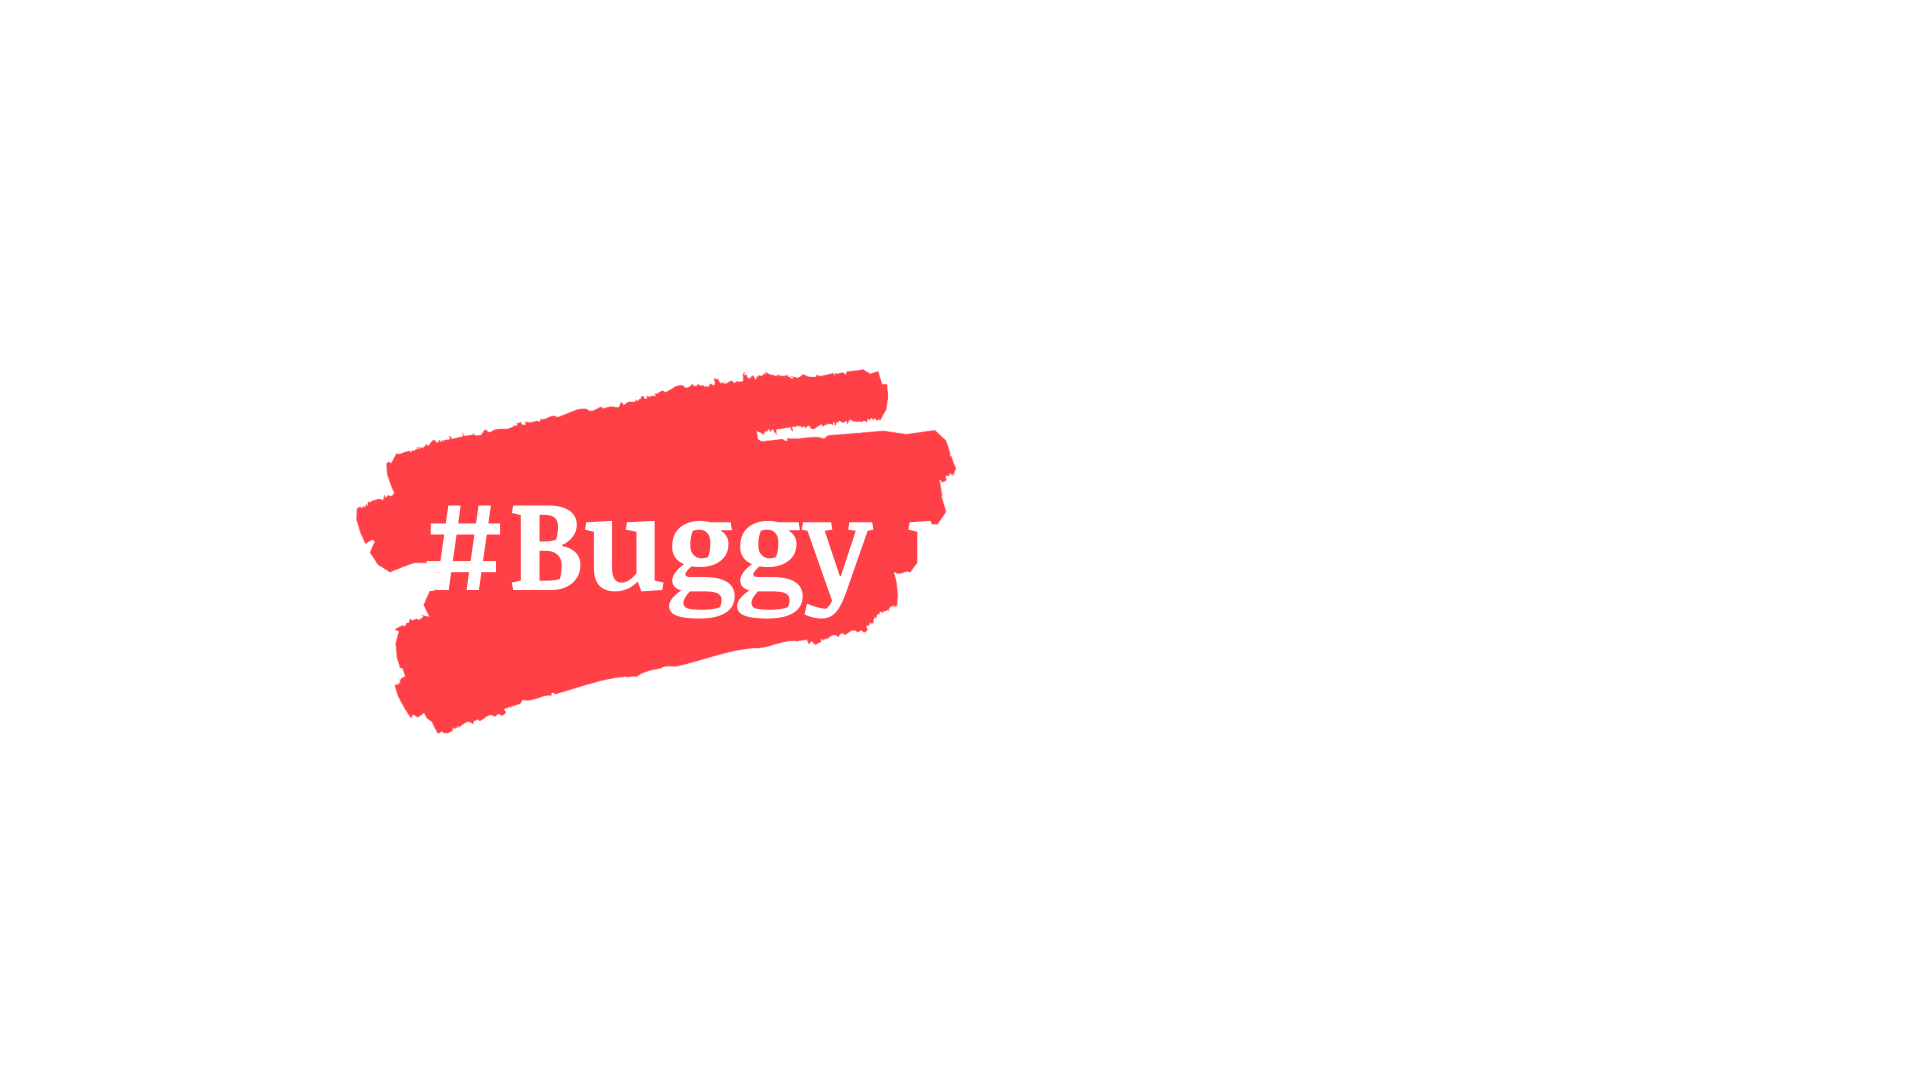 hastag buggyprogrammer, buggyprogrammer.com